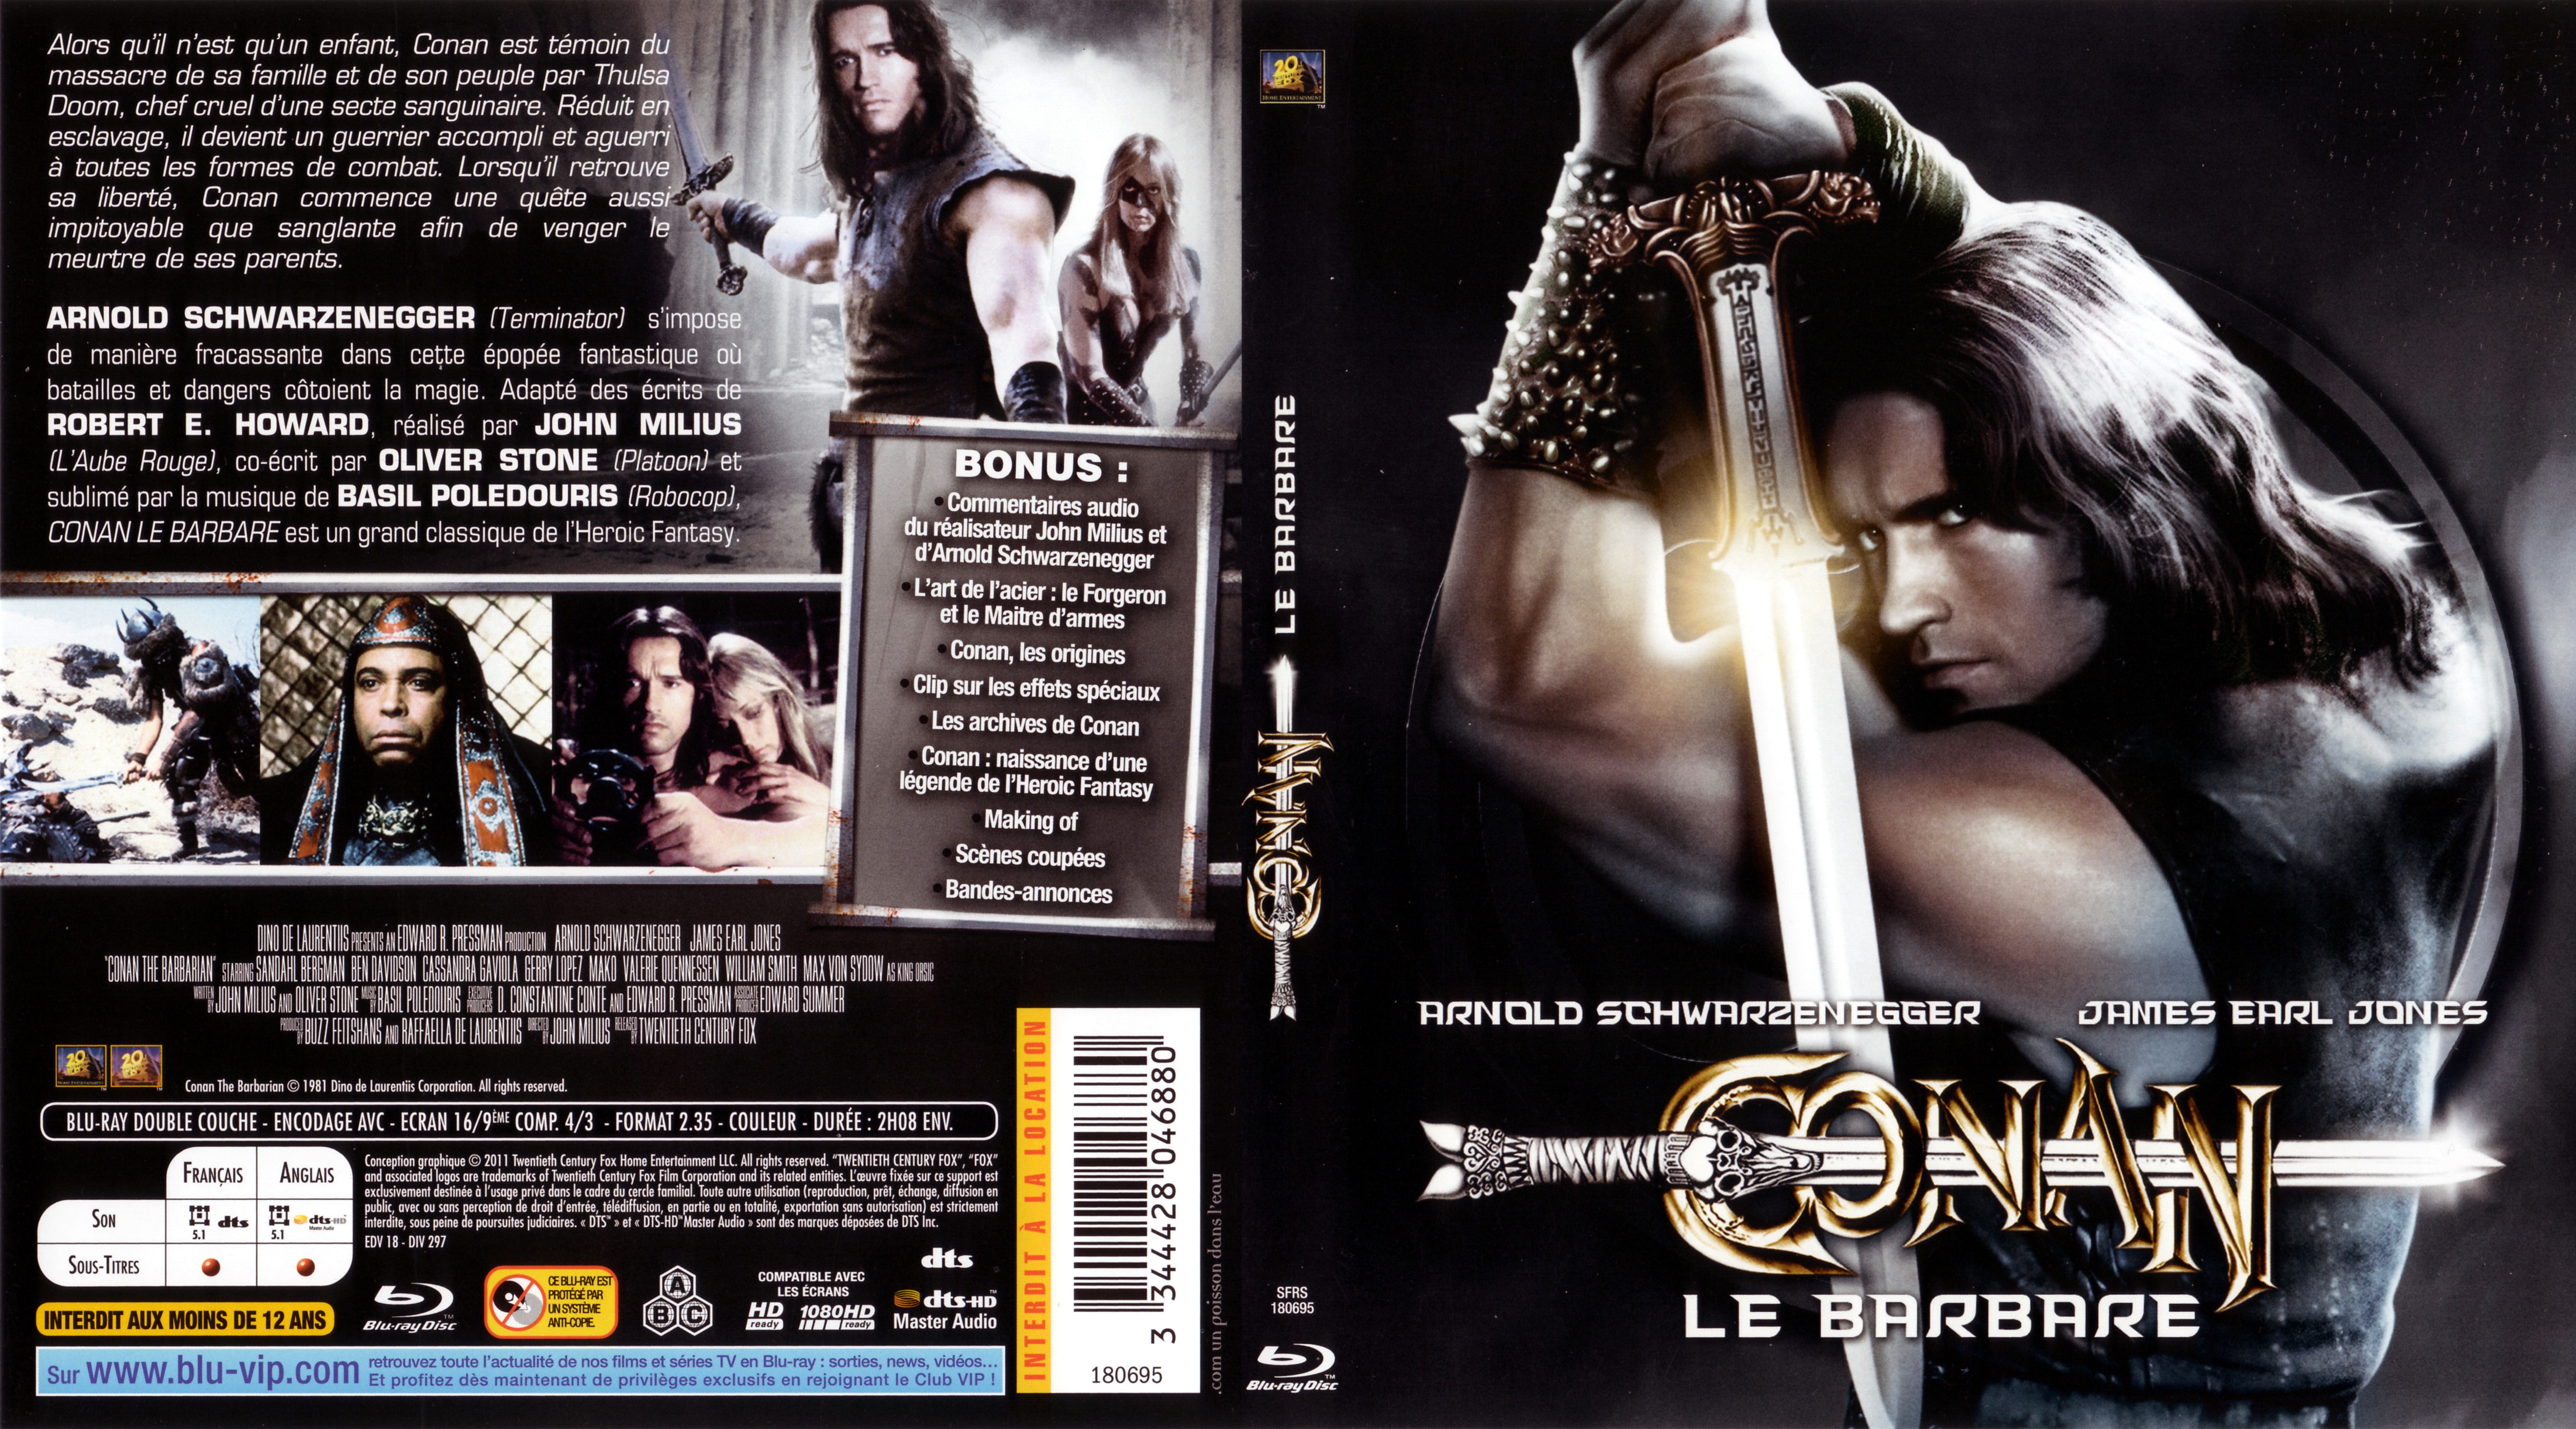 Jaquette DVD Conan le barbare (BLU-RAY)